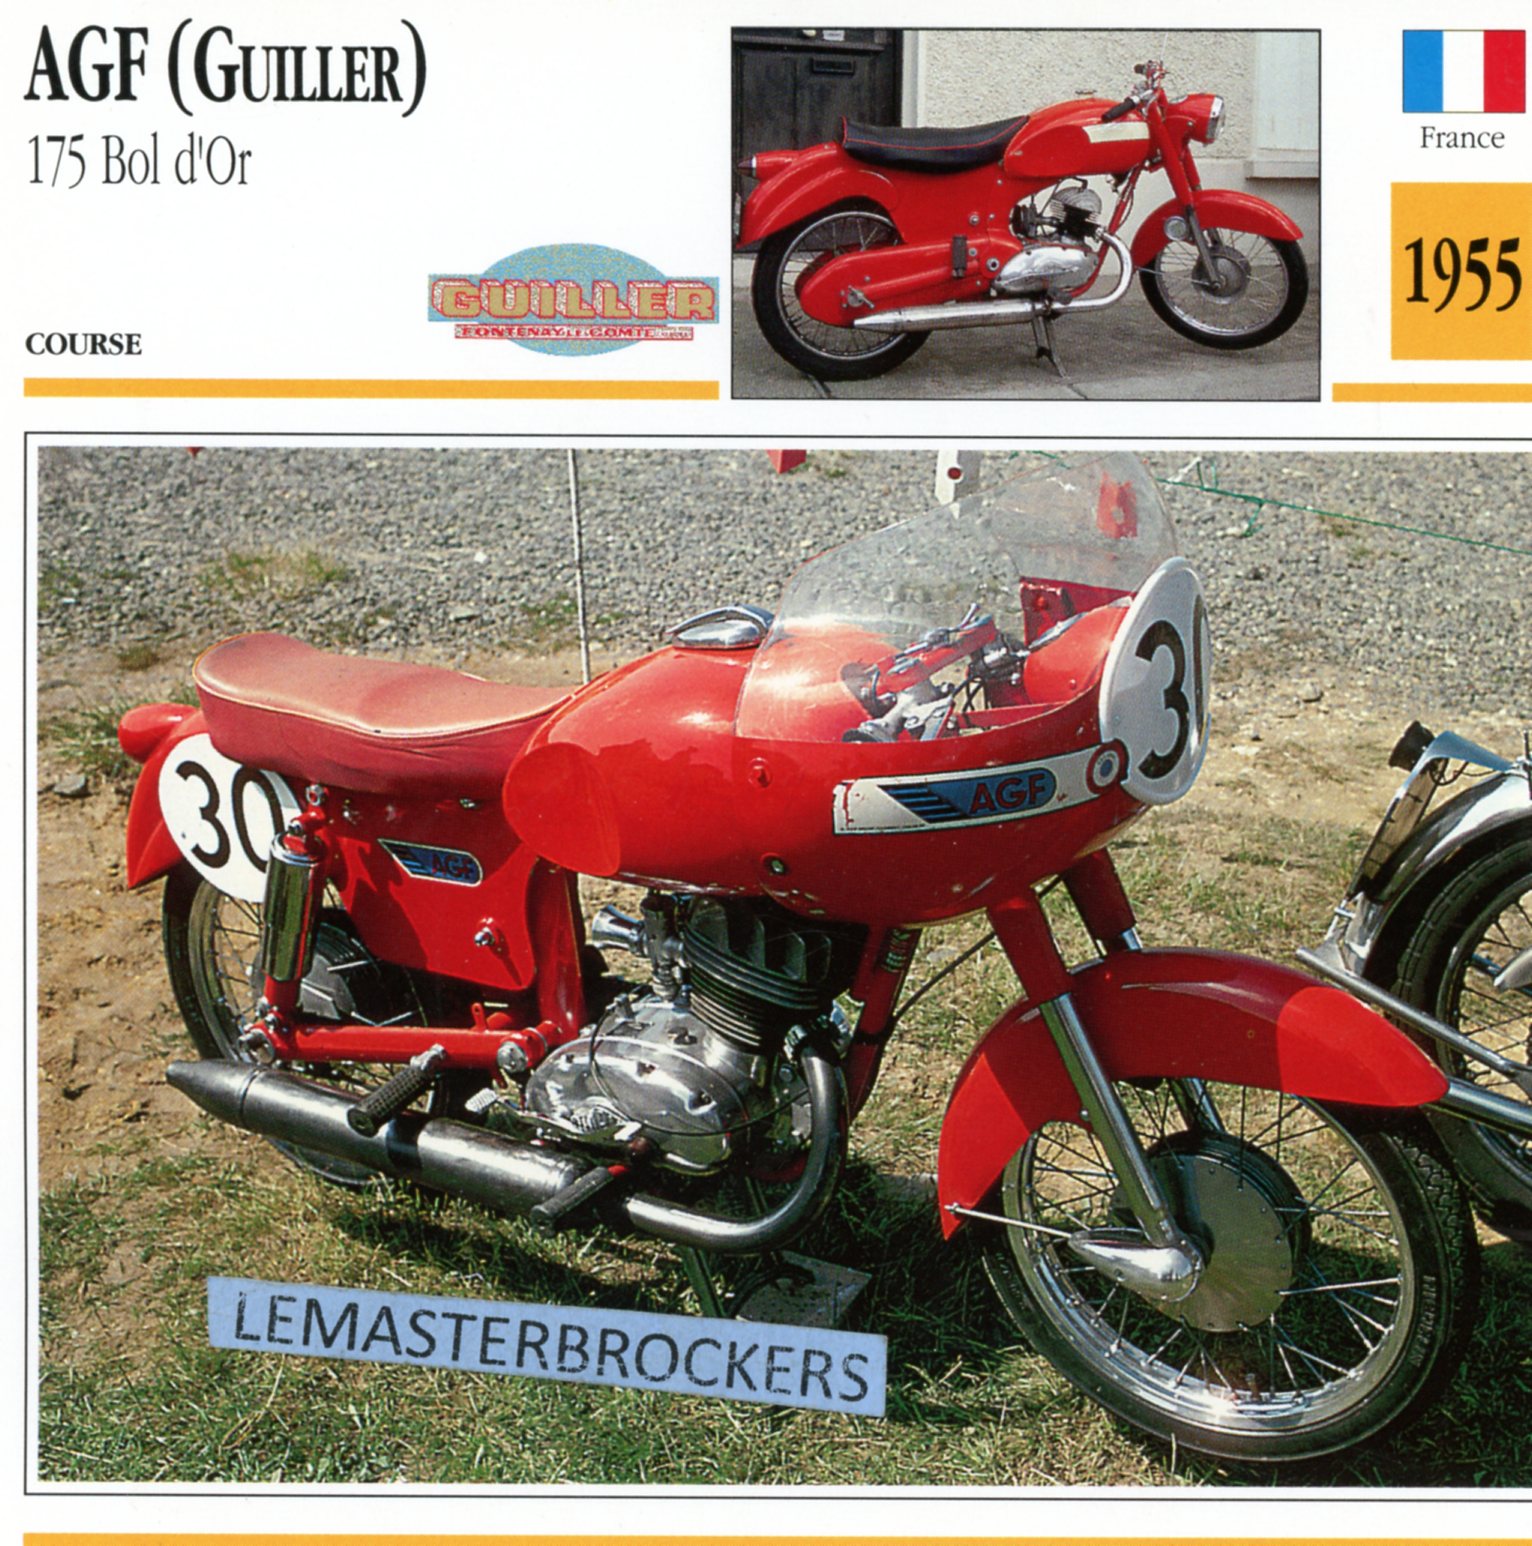 AGF-GUILLER-BOL-D'OR-1955-CARTE-CARD-FICHE-MOTO-LEMASTERBROCKERS